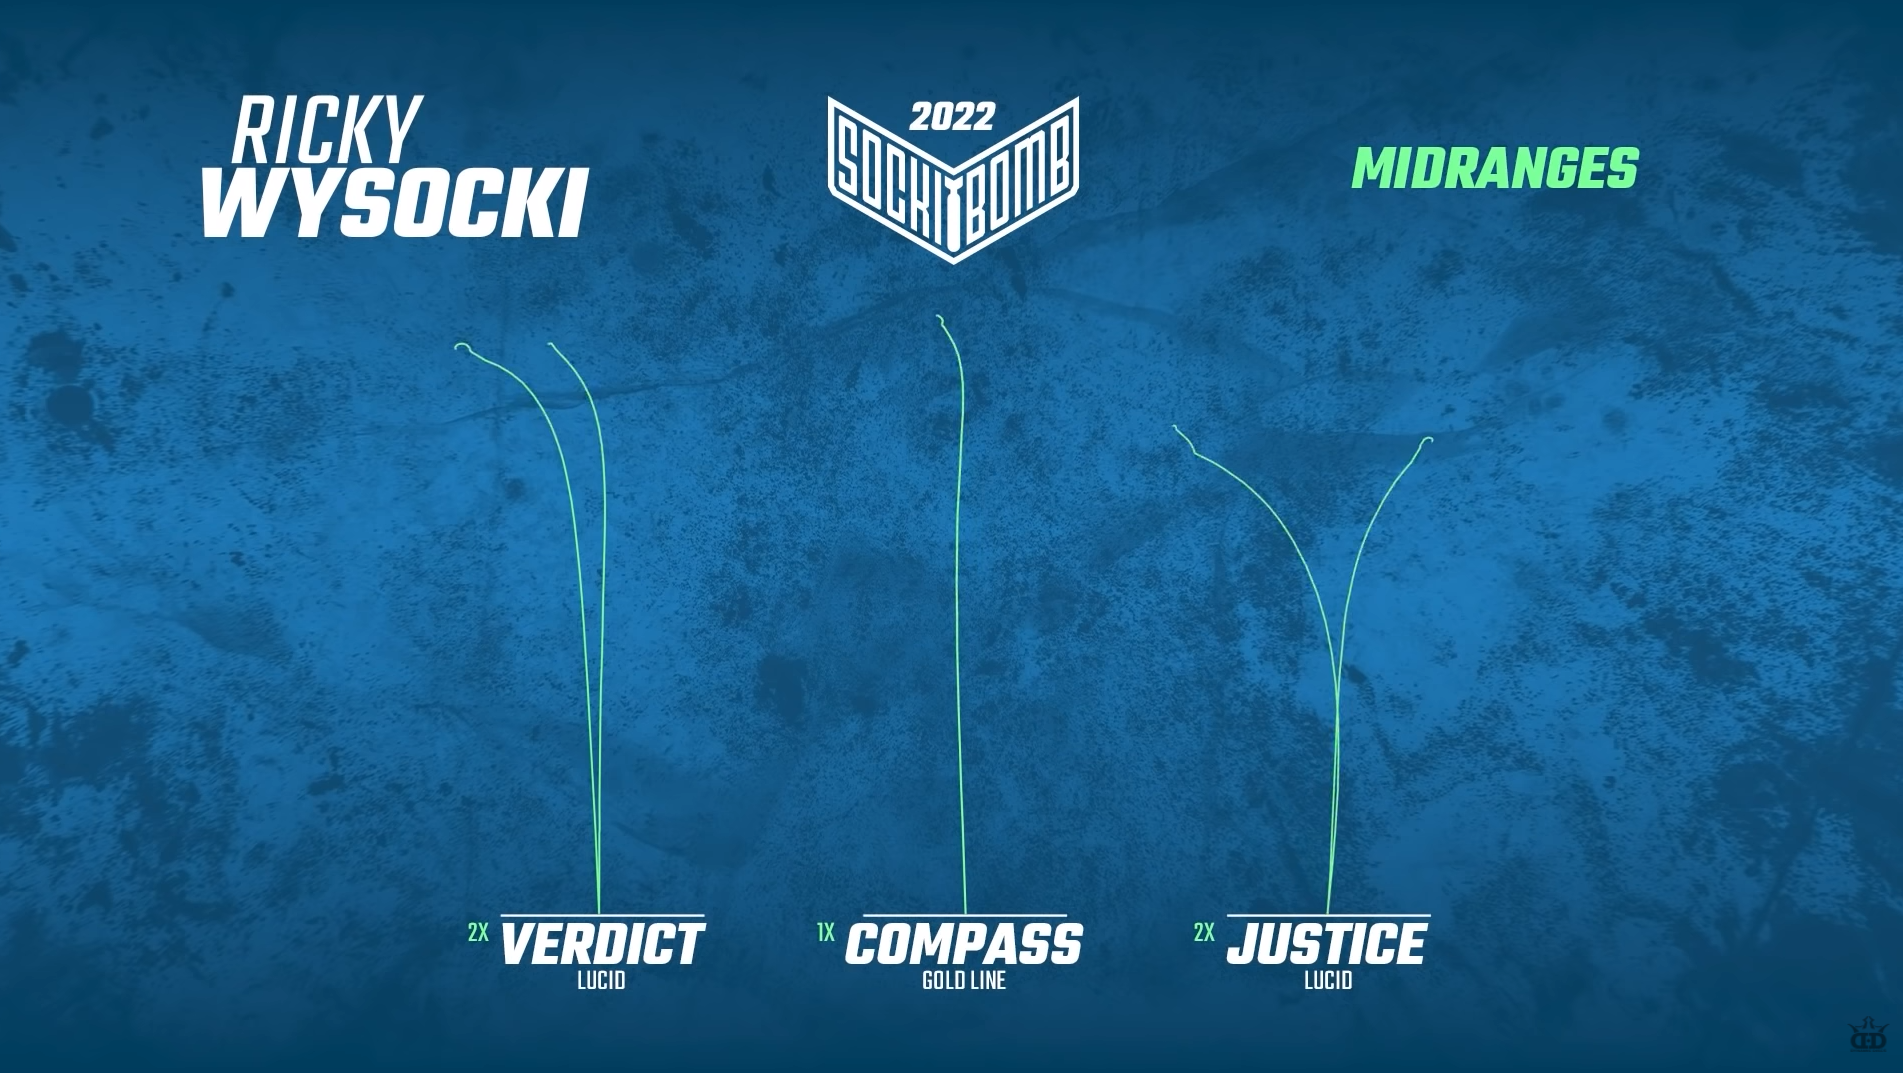 Ricky Wysocki in the bag 2022 - what midranges is ricky wysocki using